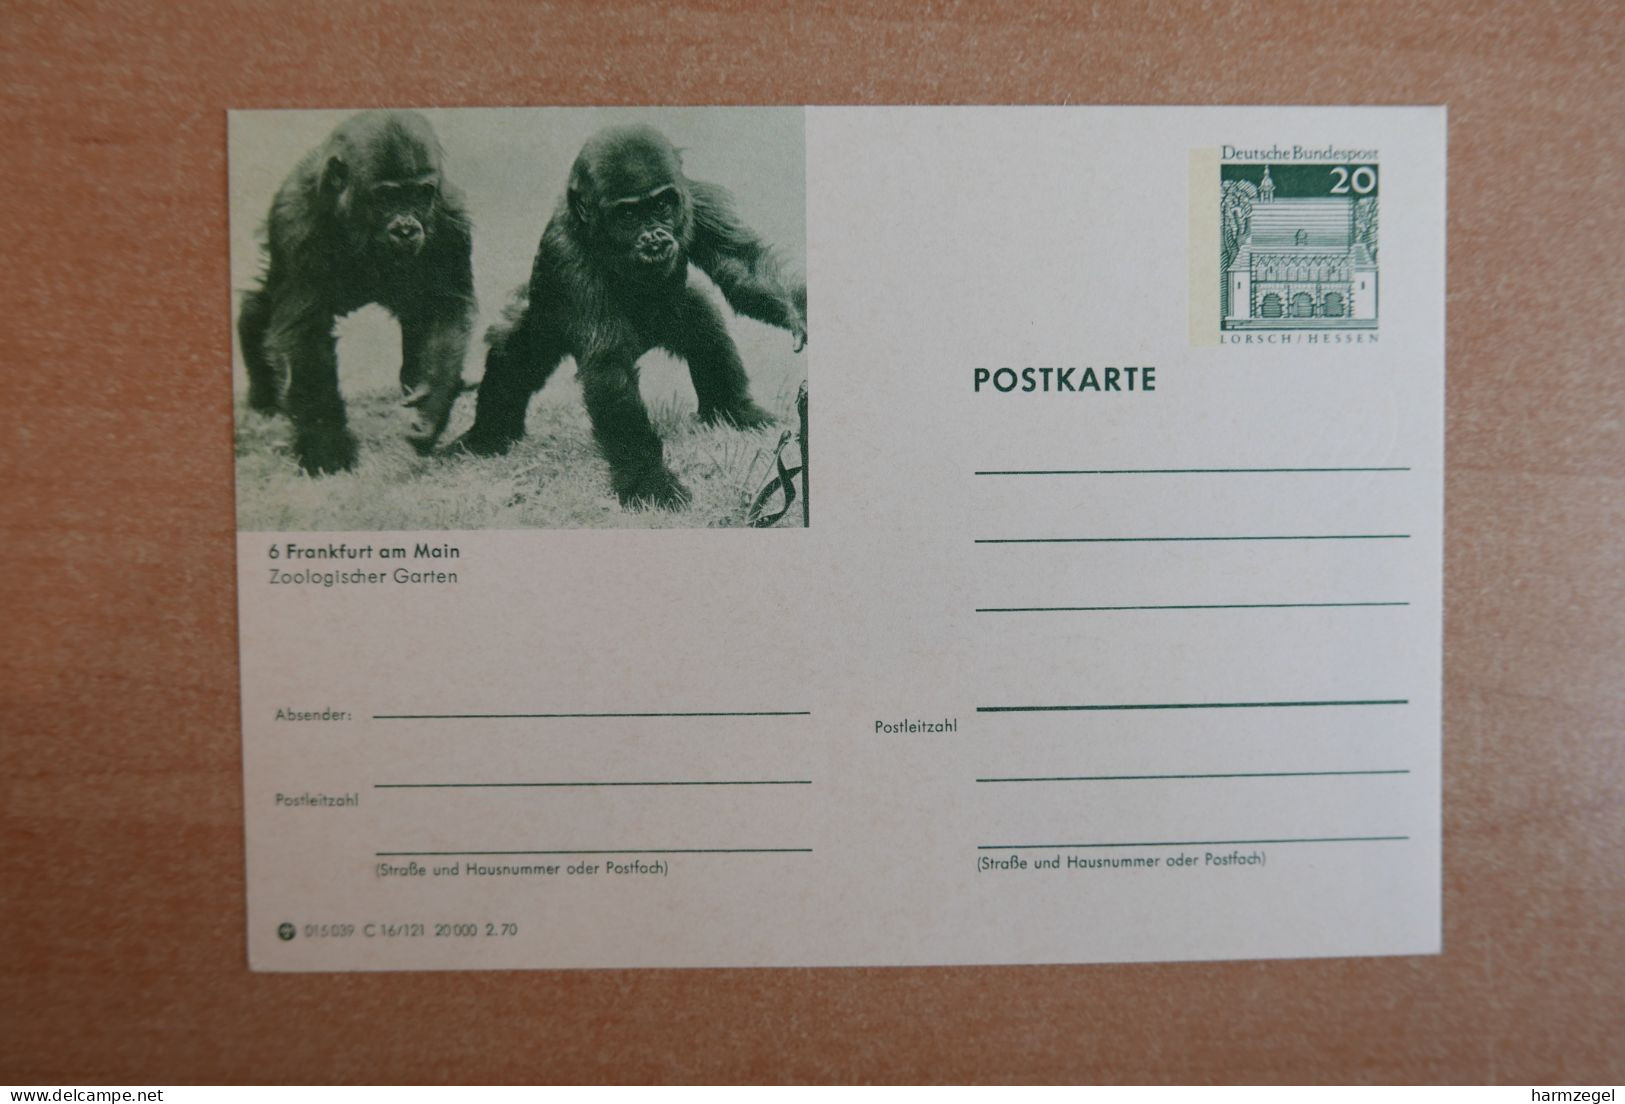 Postal Stationery, Monkey - Singes